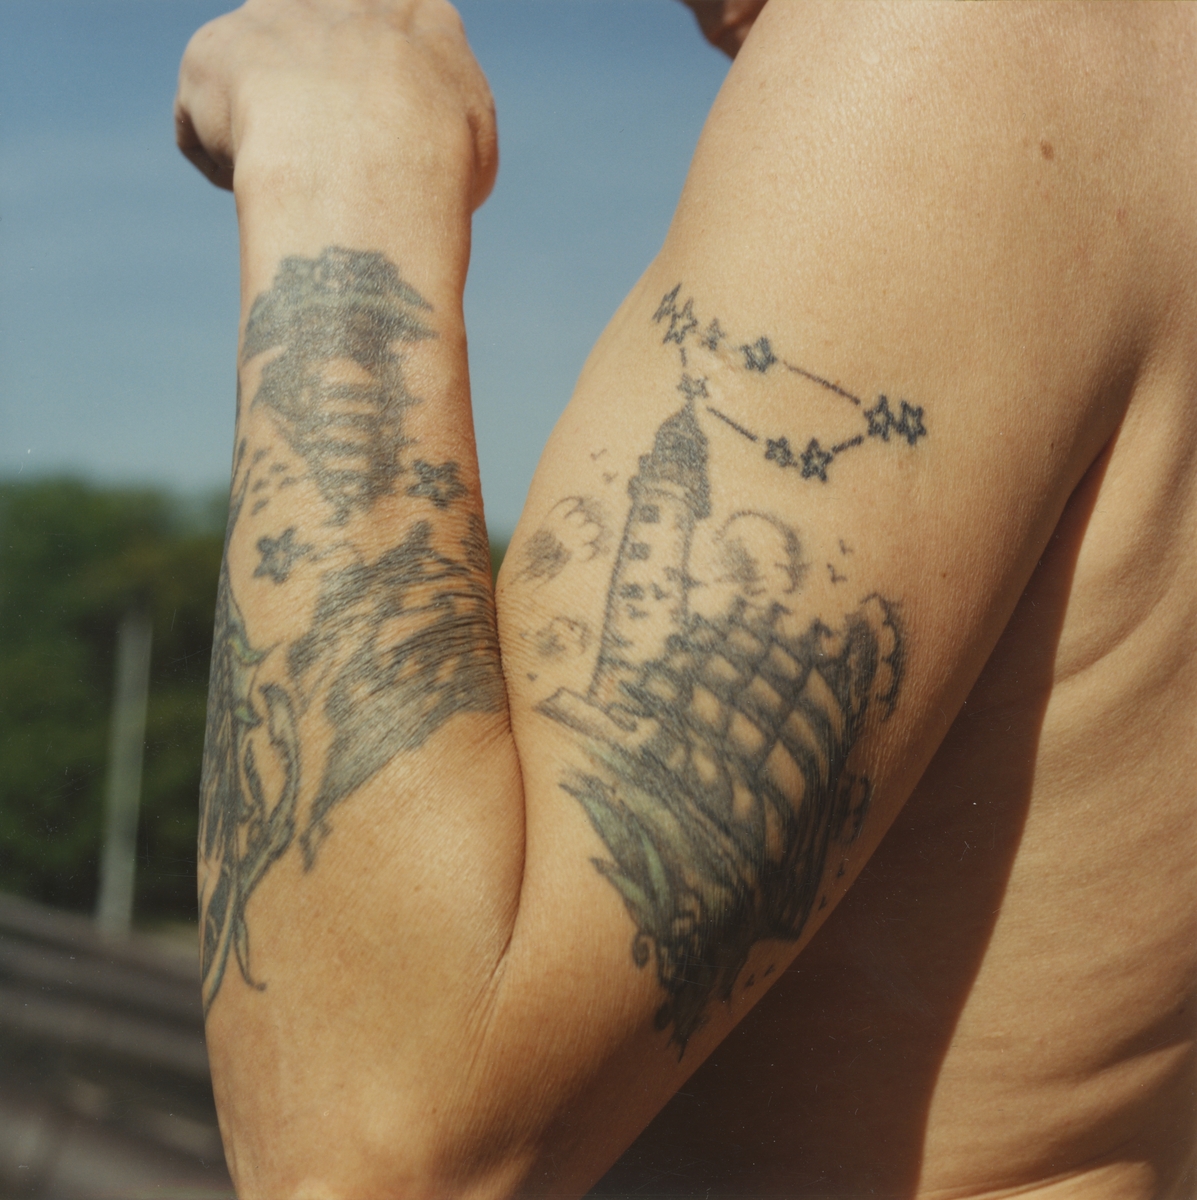 Utställningen "Tatuering". Förstudie till utställningen. En mans tatuering med sjöfartstema på hans vänstra arm.